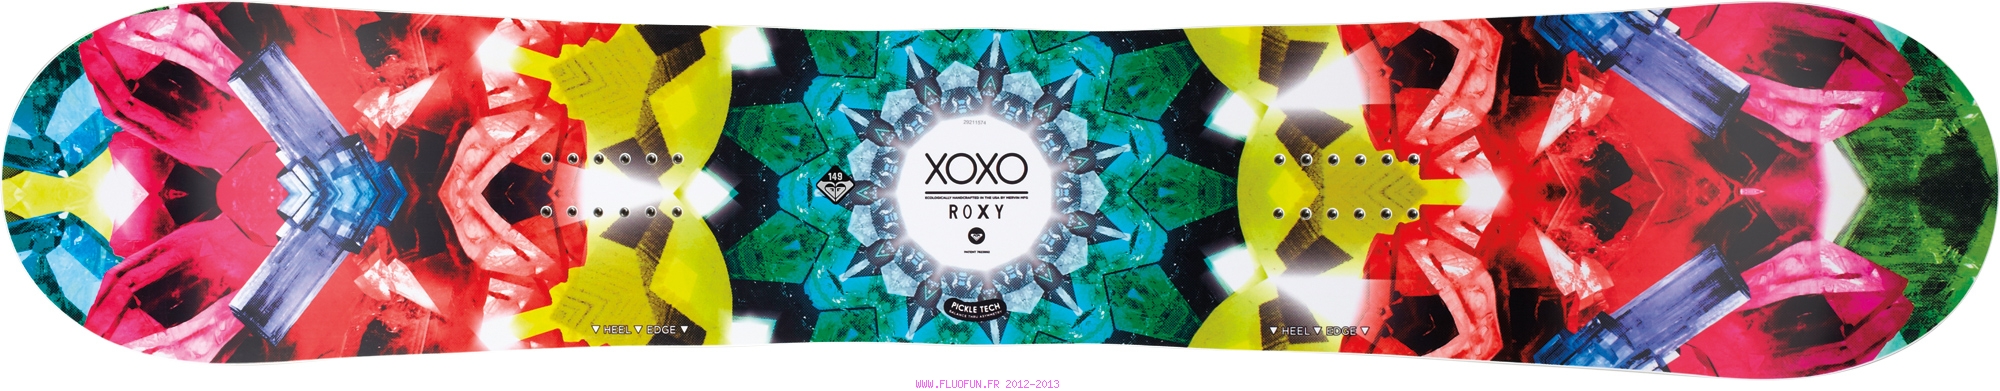 Roxy Xoxo PTX (pickle technologie)